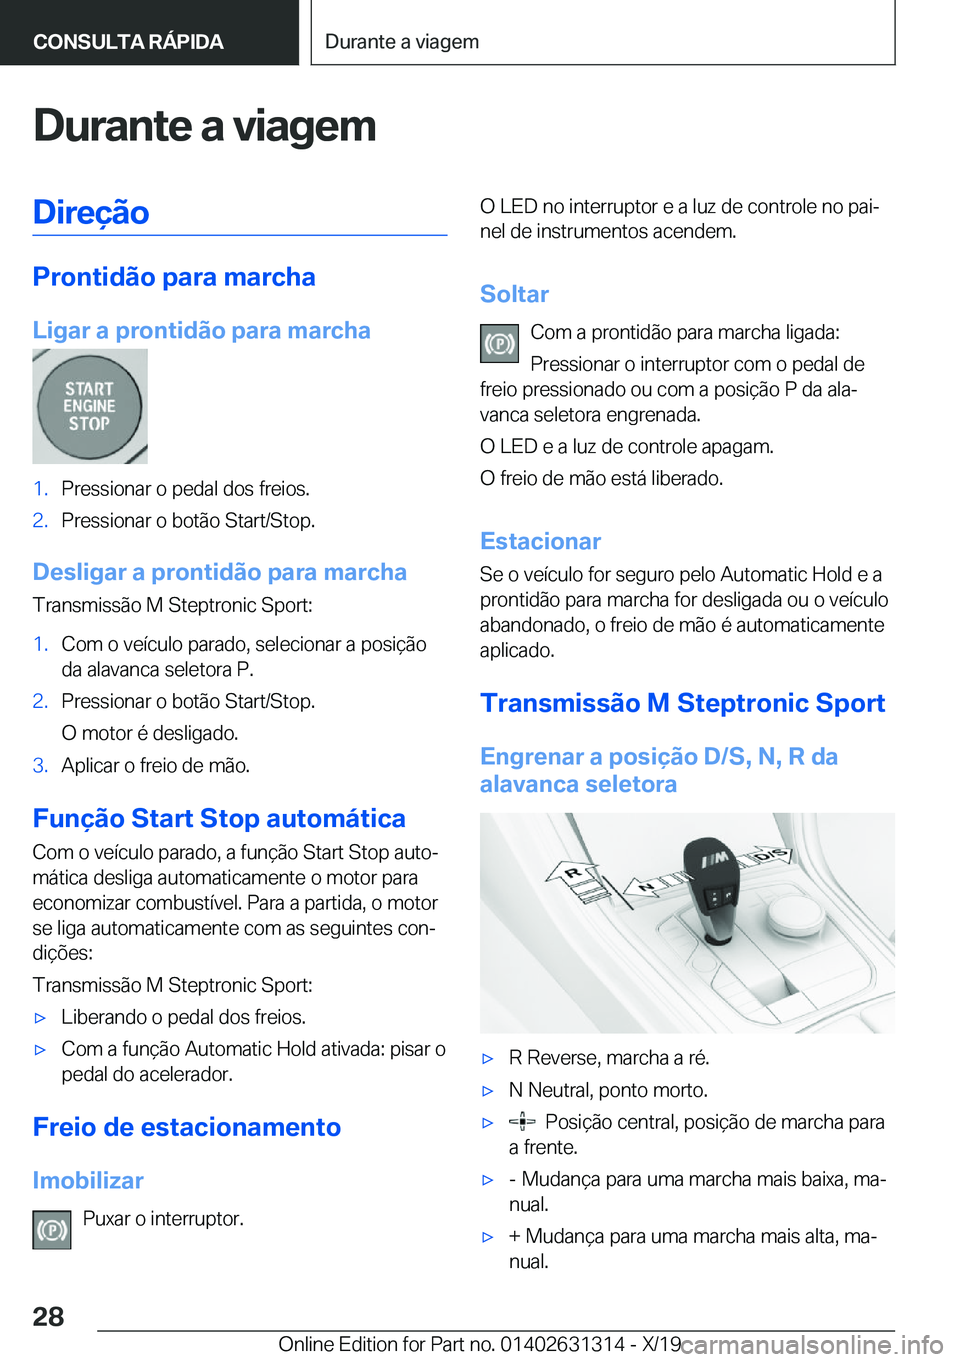 BMW M8 2020  Manual do condutor (in Portuguese) �D�u�r�a�n�t�e��a��v�i�a�g�e�m�D�i�r�e�